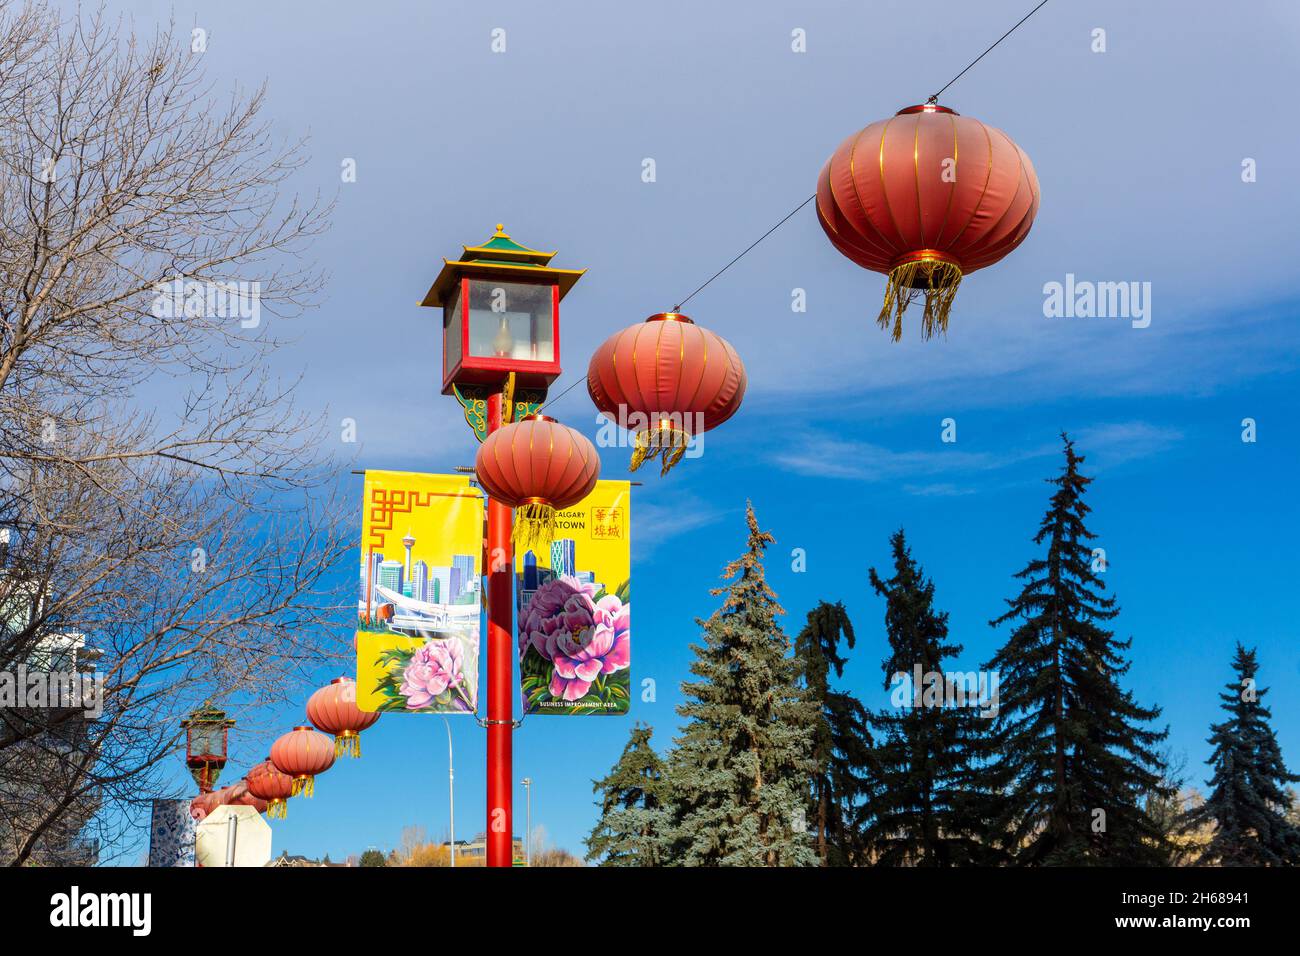 Calgary, Kanada - 13. November 2021: In der Innenstadt von Chinatown in Calgary hängen rote Laternen an chinesischen Straßenlaternen mit bunten Bannern. Stockfoto